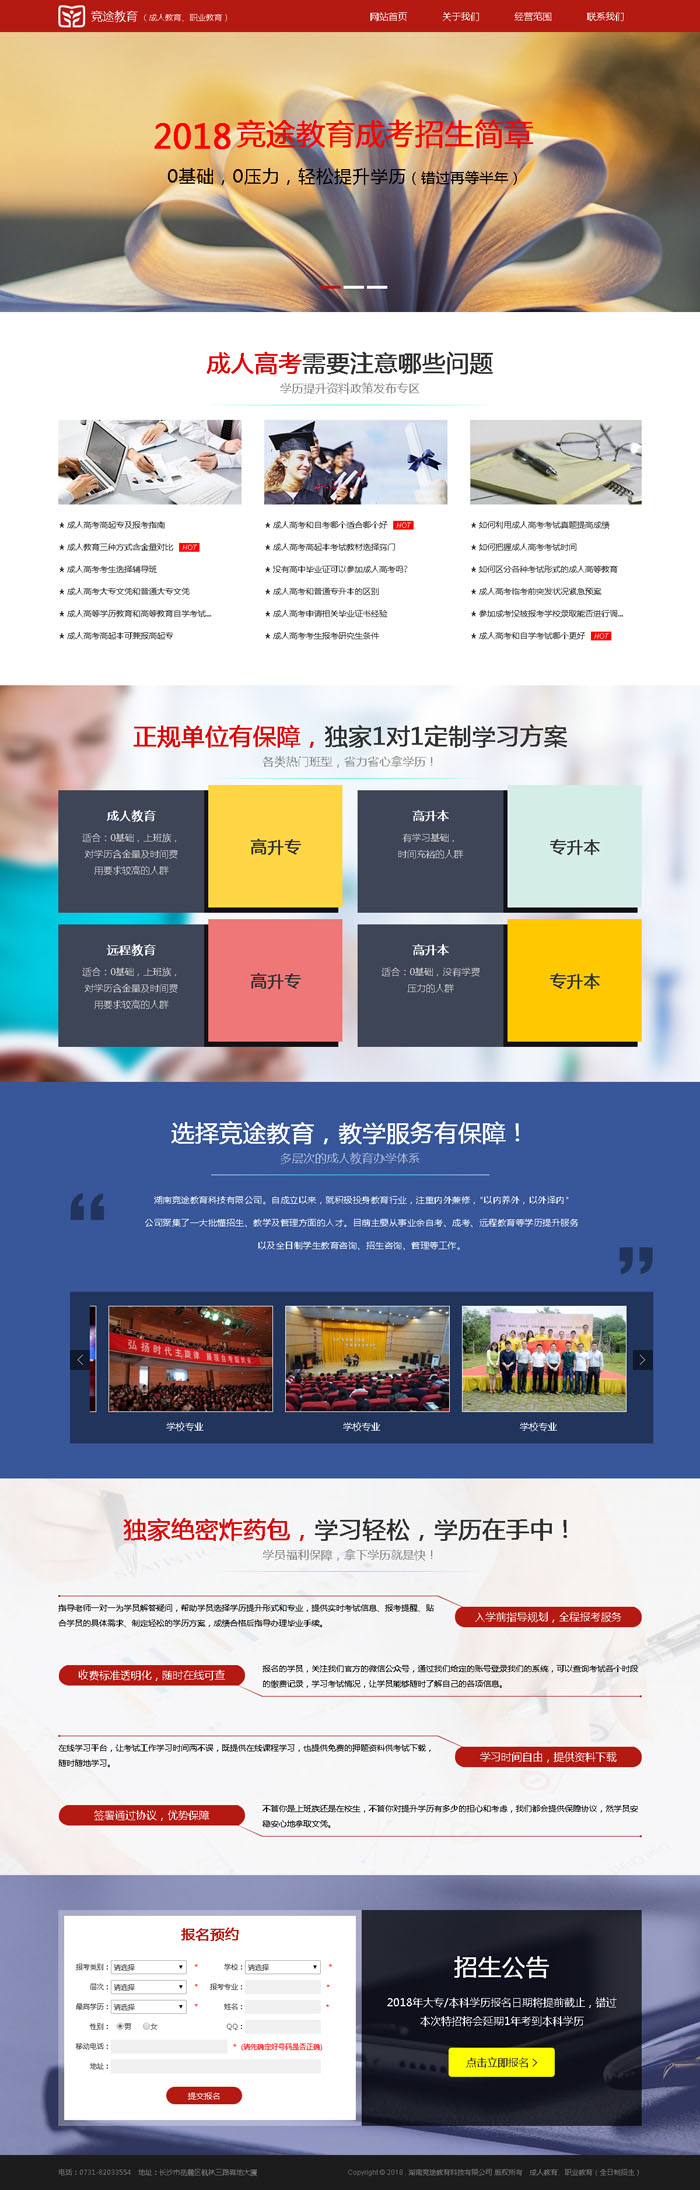 湖南竞途教育科技有限公司网站设计效果图